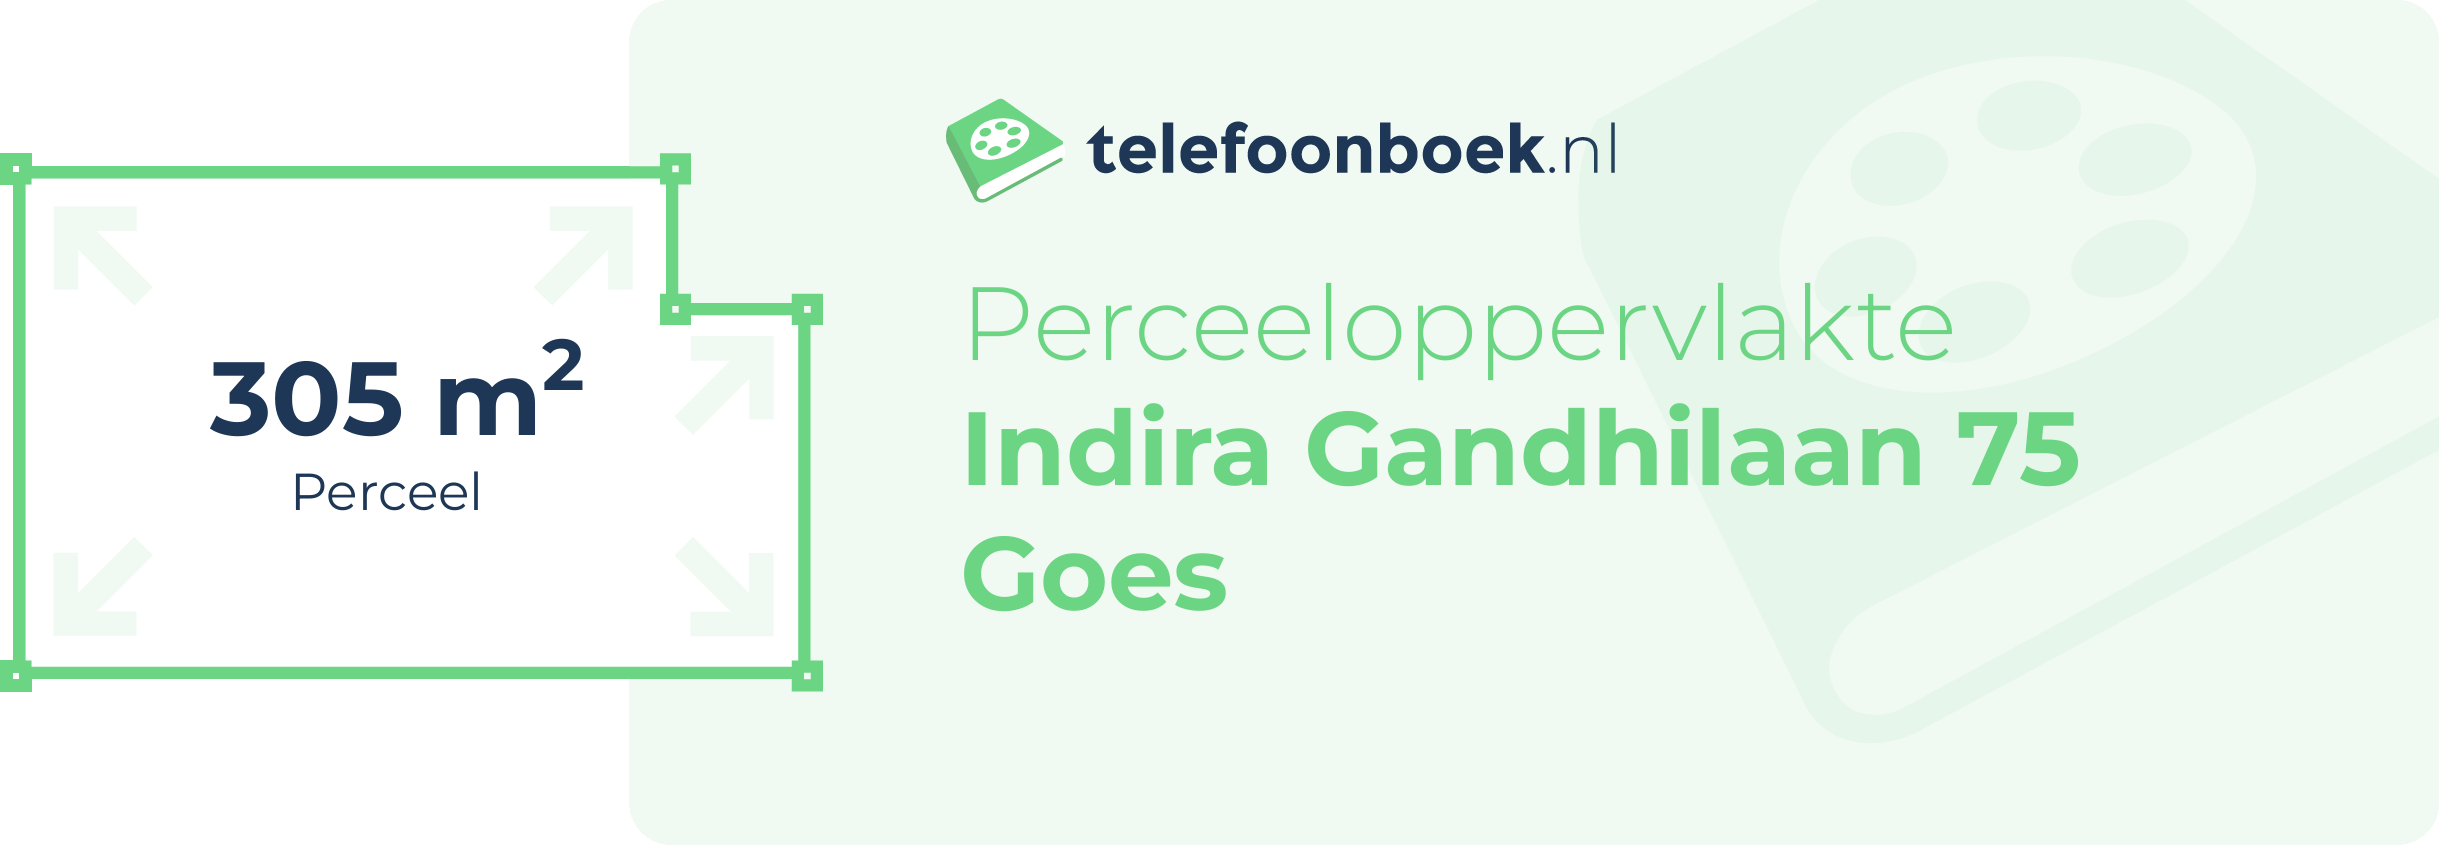 Perceeloppervlakte Indira Gandhilaan 75 Goes